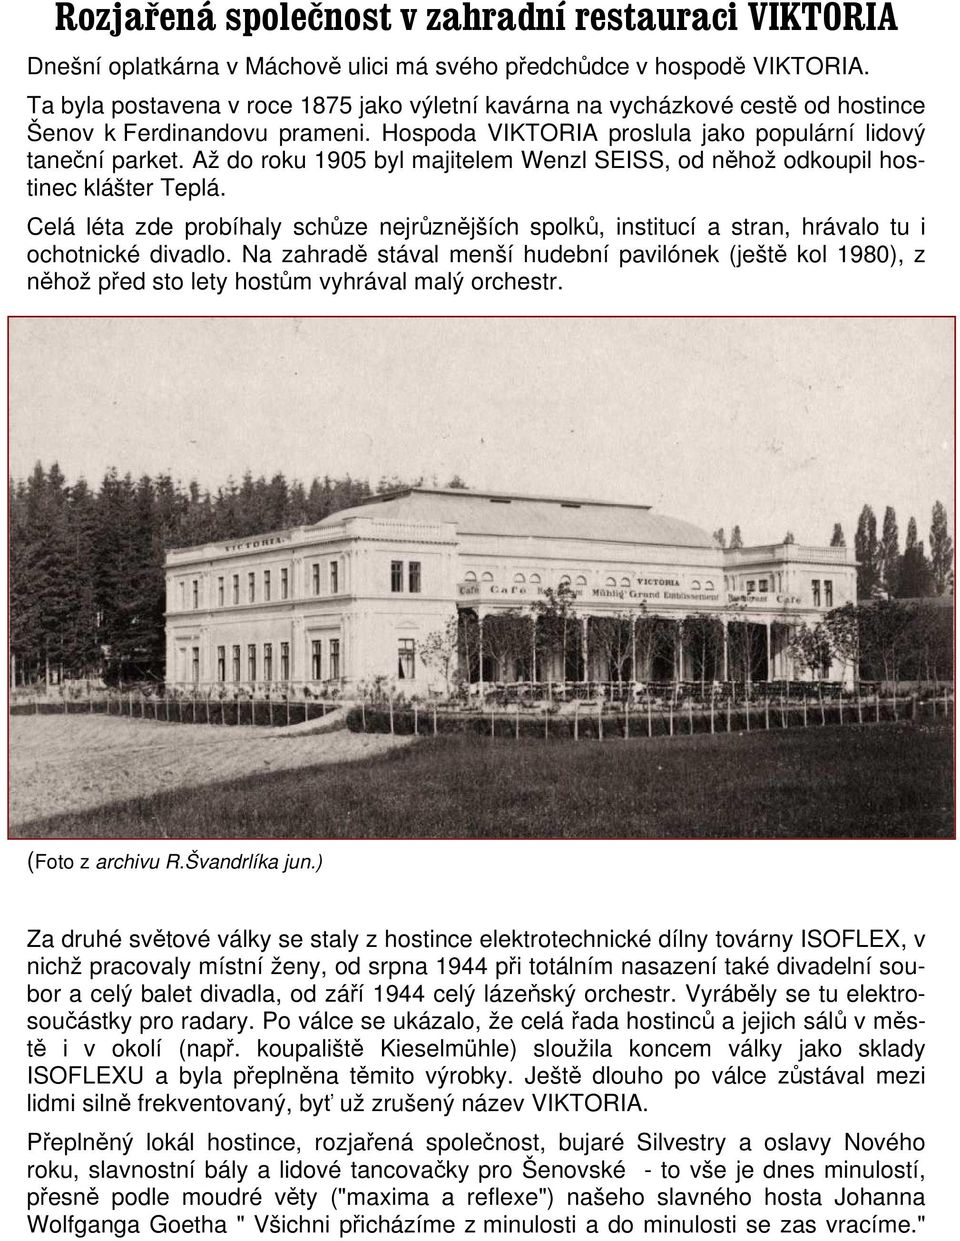 Až do roku 1905 byl majitelem Wenzl SEISS, od něhož odkoupil hostinec klášter Teplá. Celá léta zde probíhaly schůze nejrůznějších spolků, institucí a stran, hrávalo tu i ochotnické divadlo.